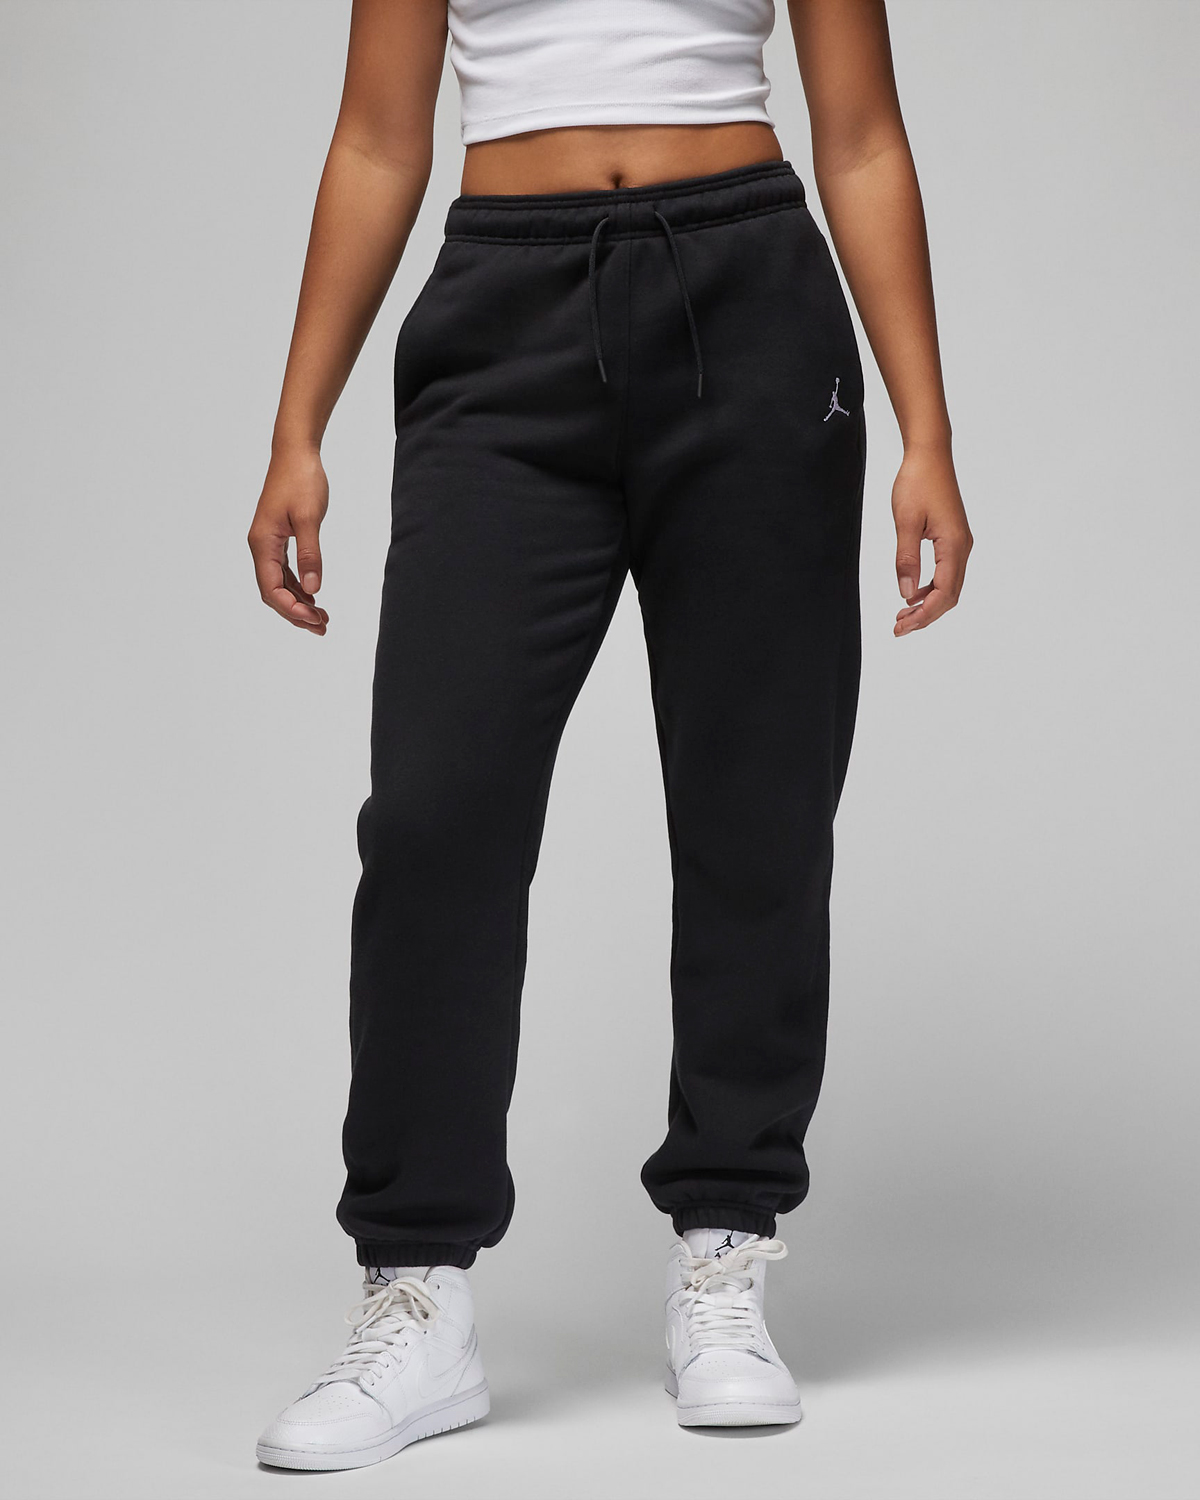 Jordan-Brooklyn-Womens-Pants-Black